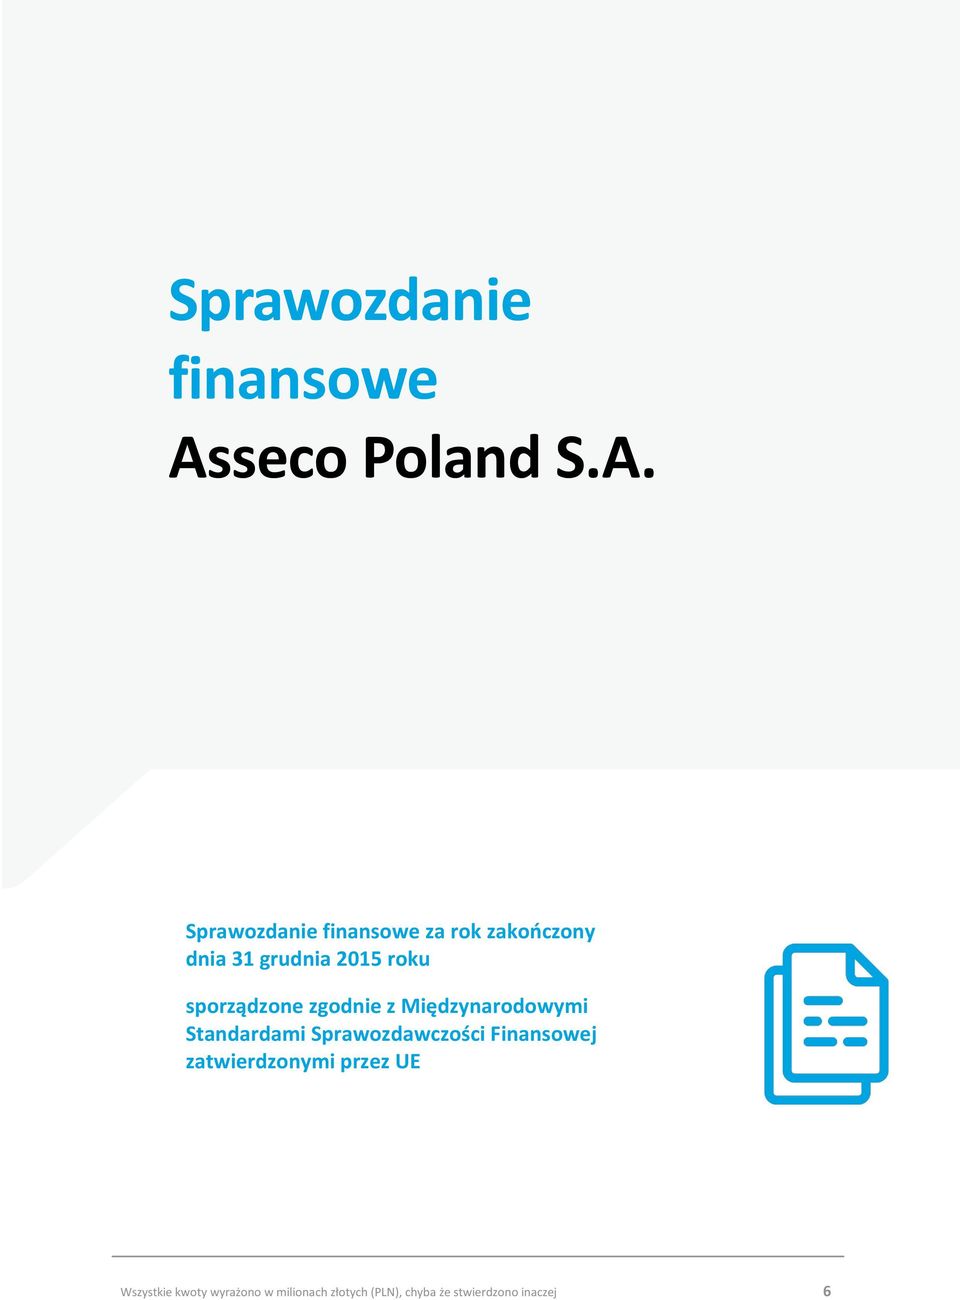 Sprawozdanie finansowe za rok zakończony dnia 31 grudnia 2015 roku